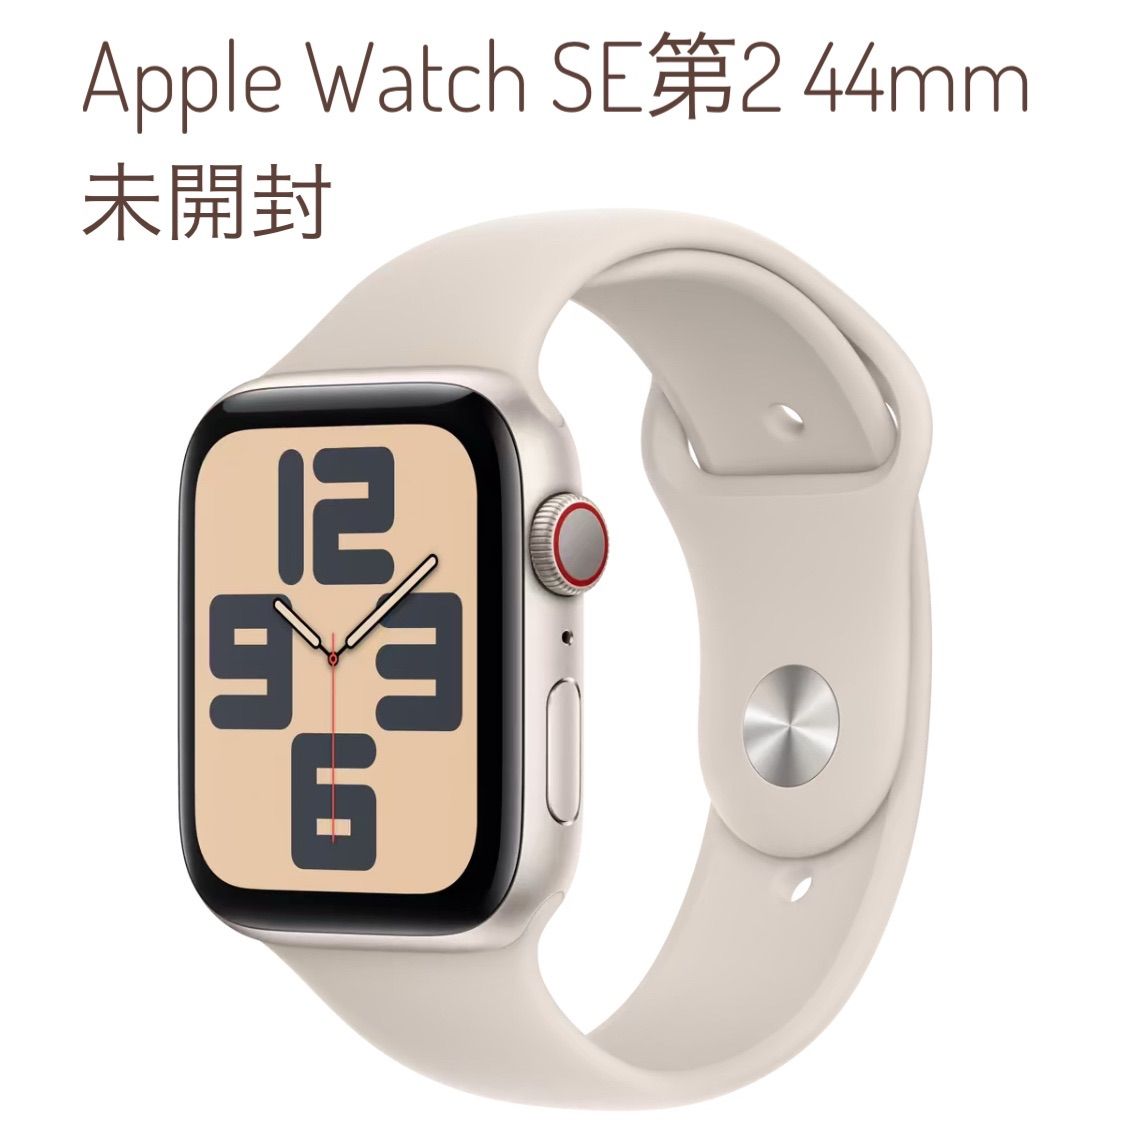 Apple Watch SE (Gen 2) 44mm 未開封 - 時計